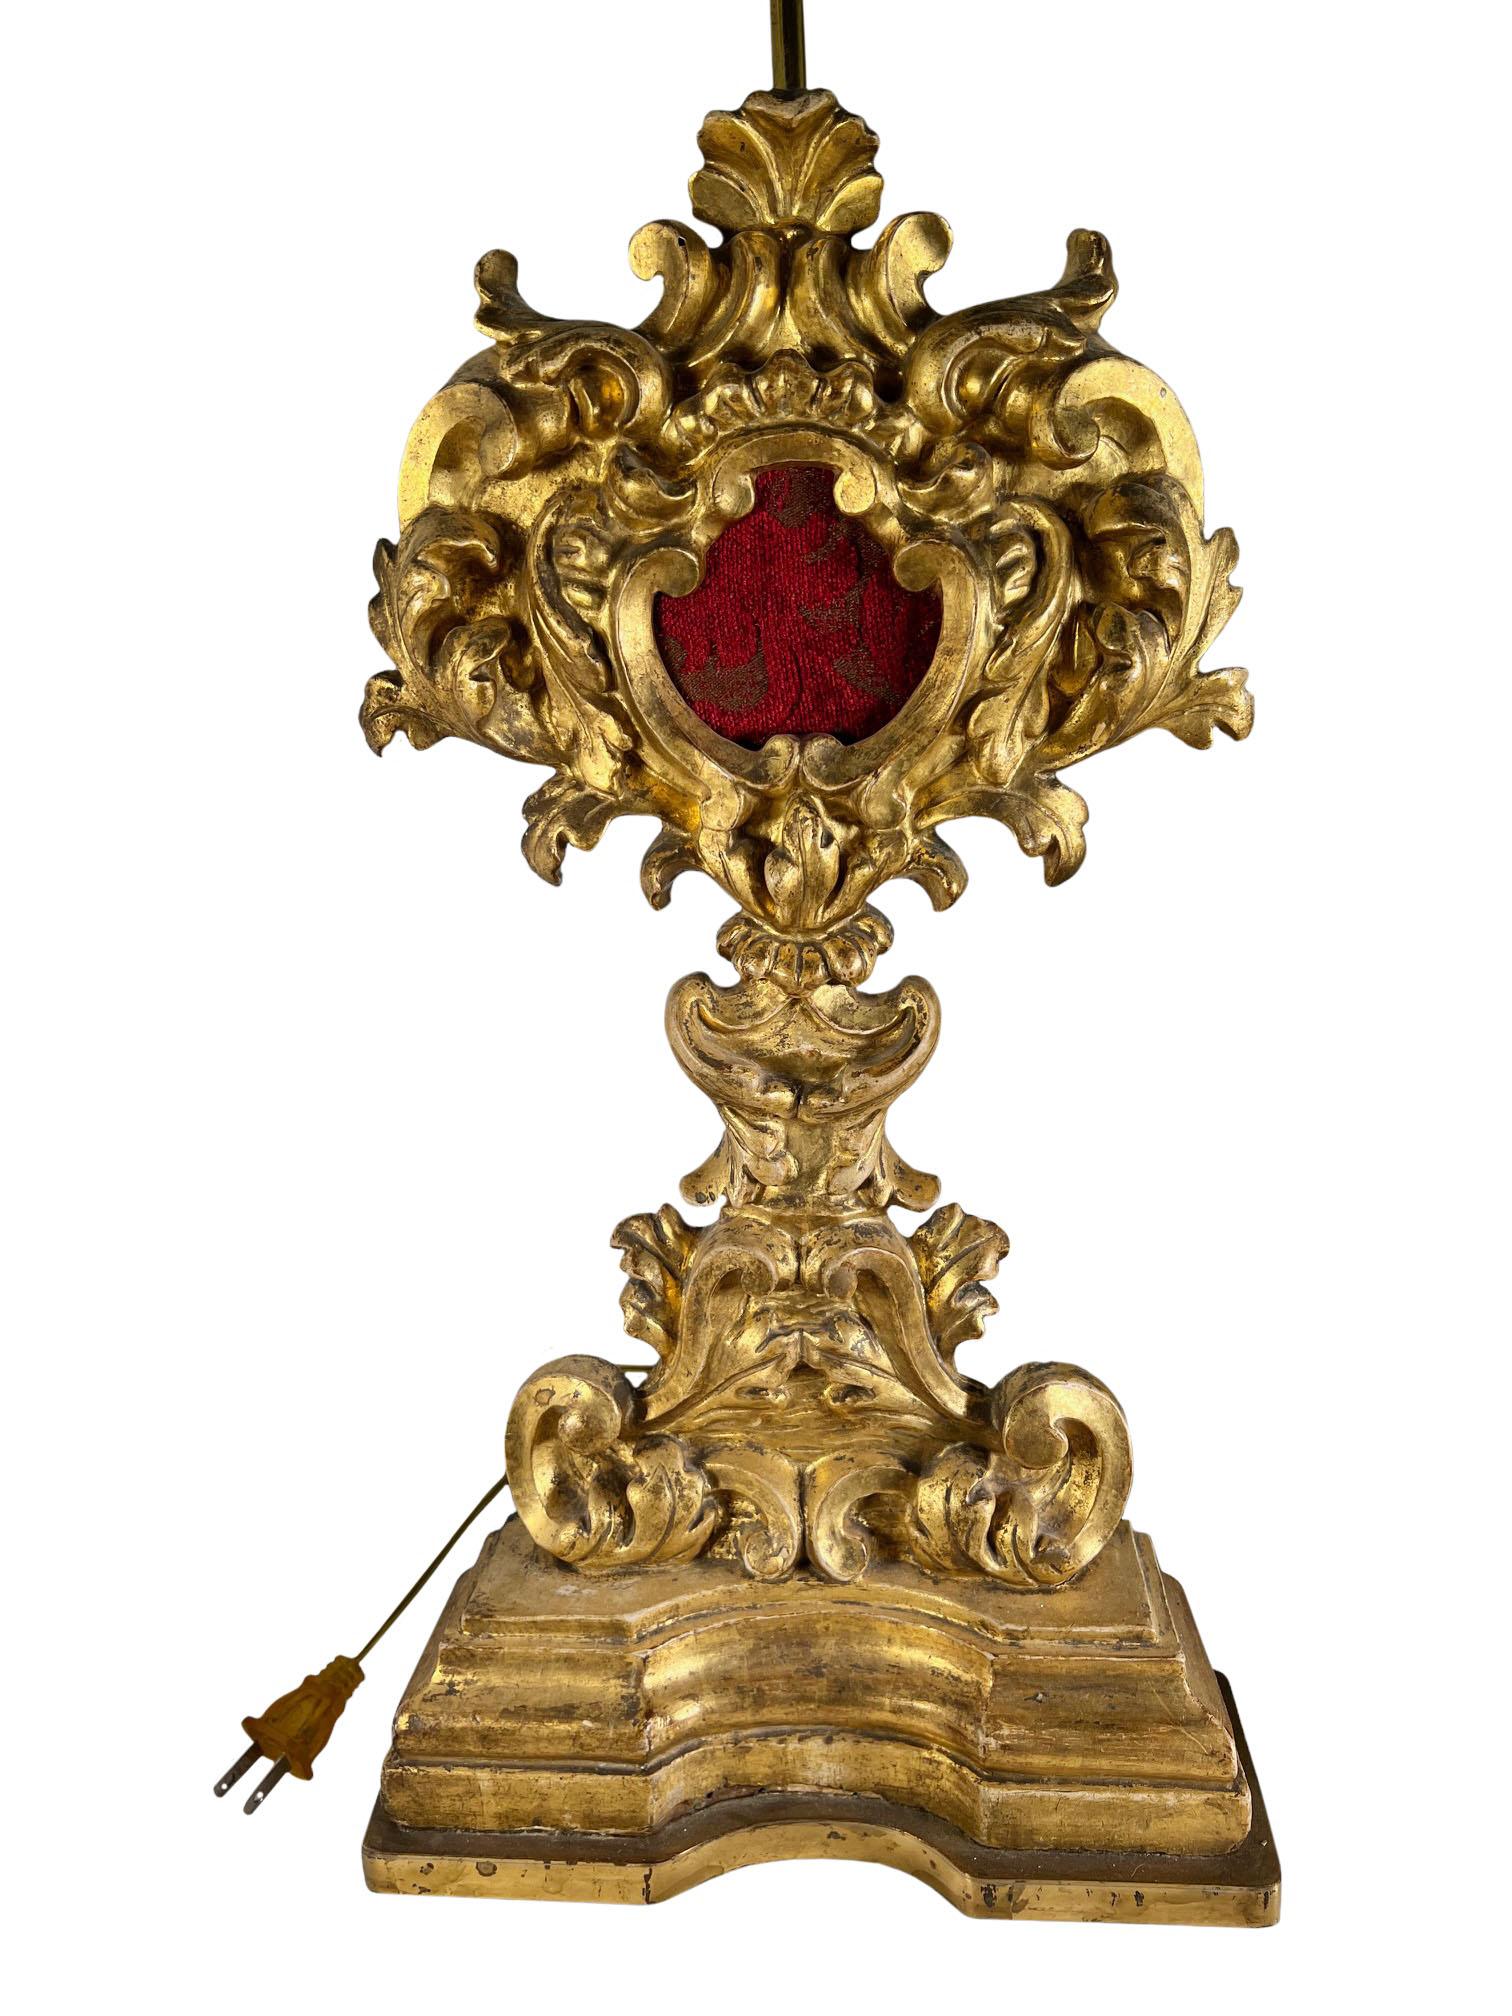 Porte-reliquaire italien entouré de bois sculpté et doré de style rococo avec des bases en bronze doré.  Réutilisé ultérieurement pour en faire des lampes. Vers 1780 à 1820. Le reliquaire ne mesure que 17,5 cm de haut.  